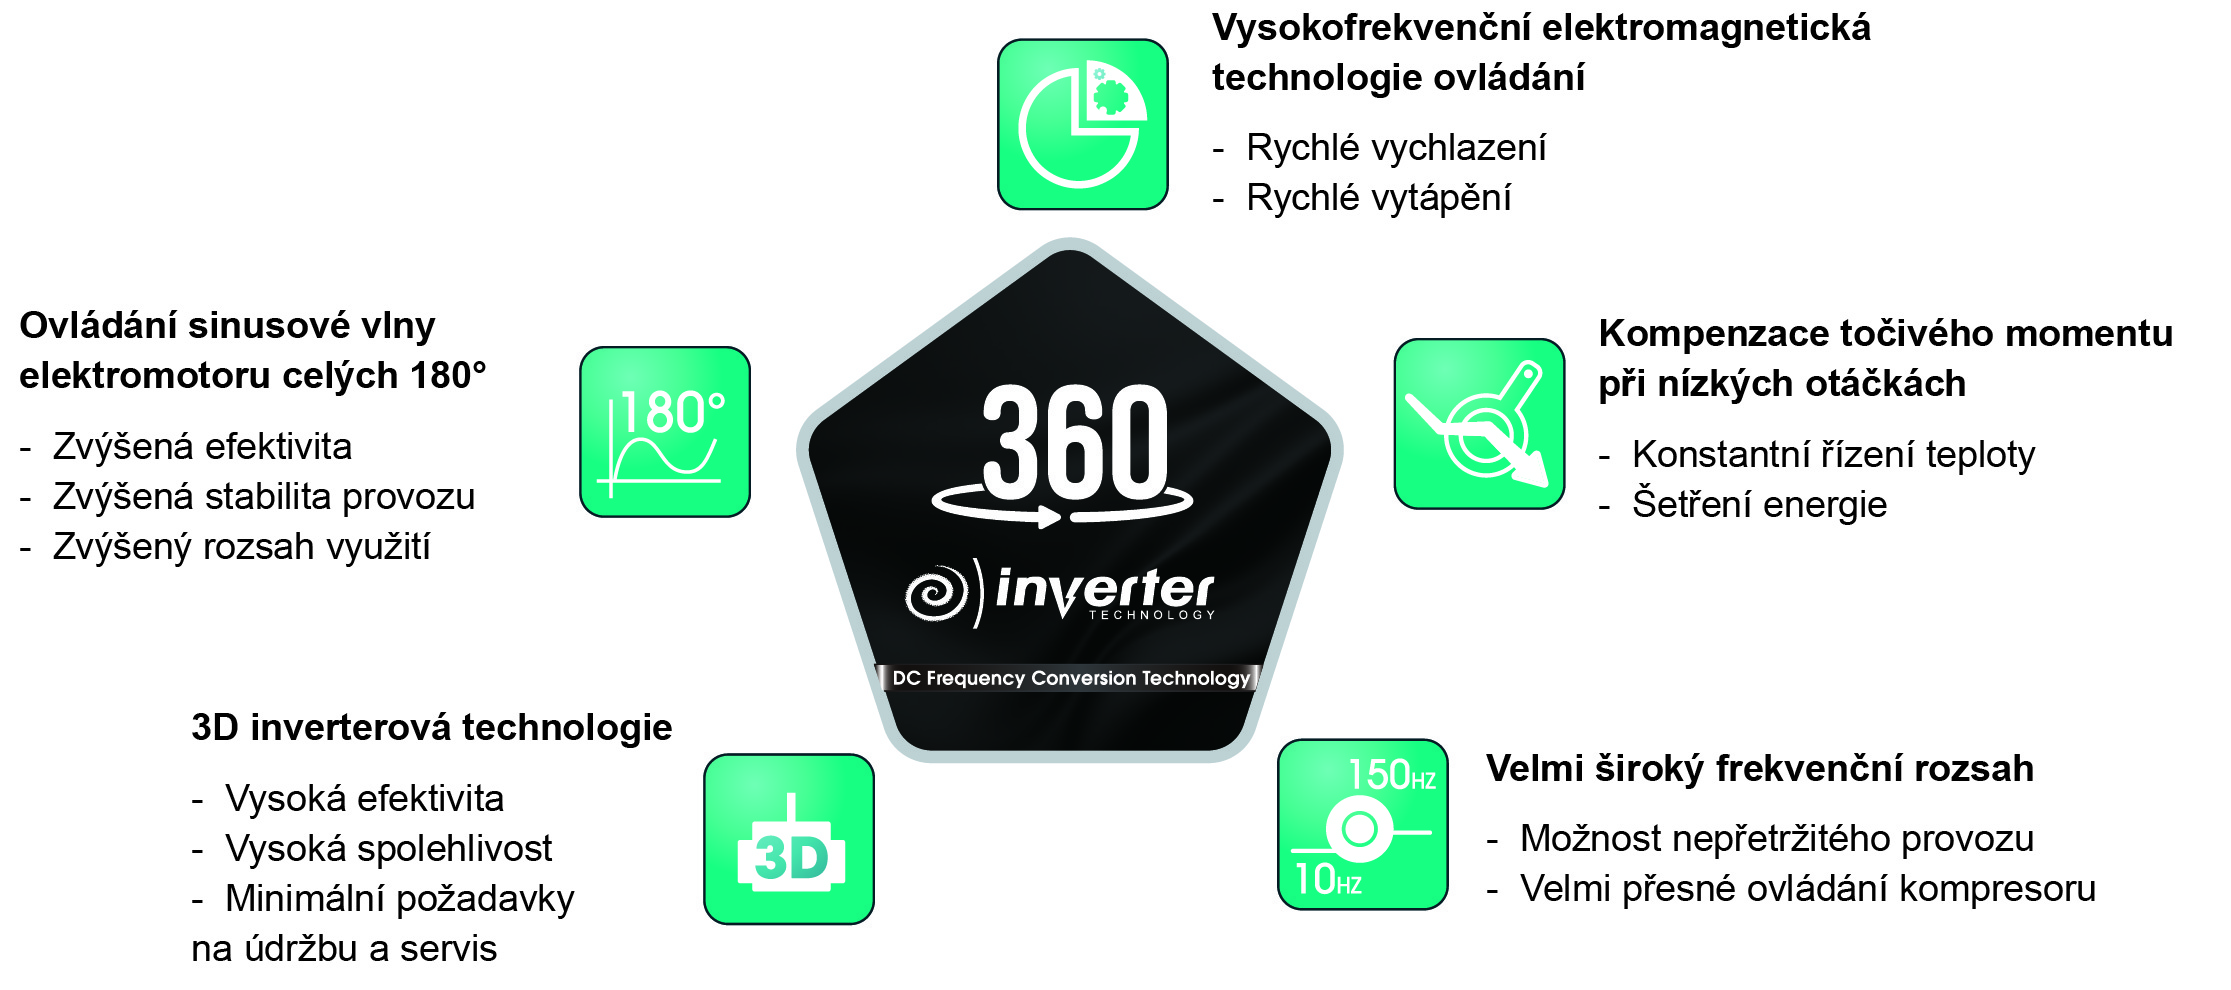 Hisense Inverter